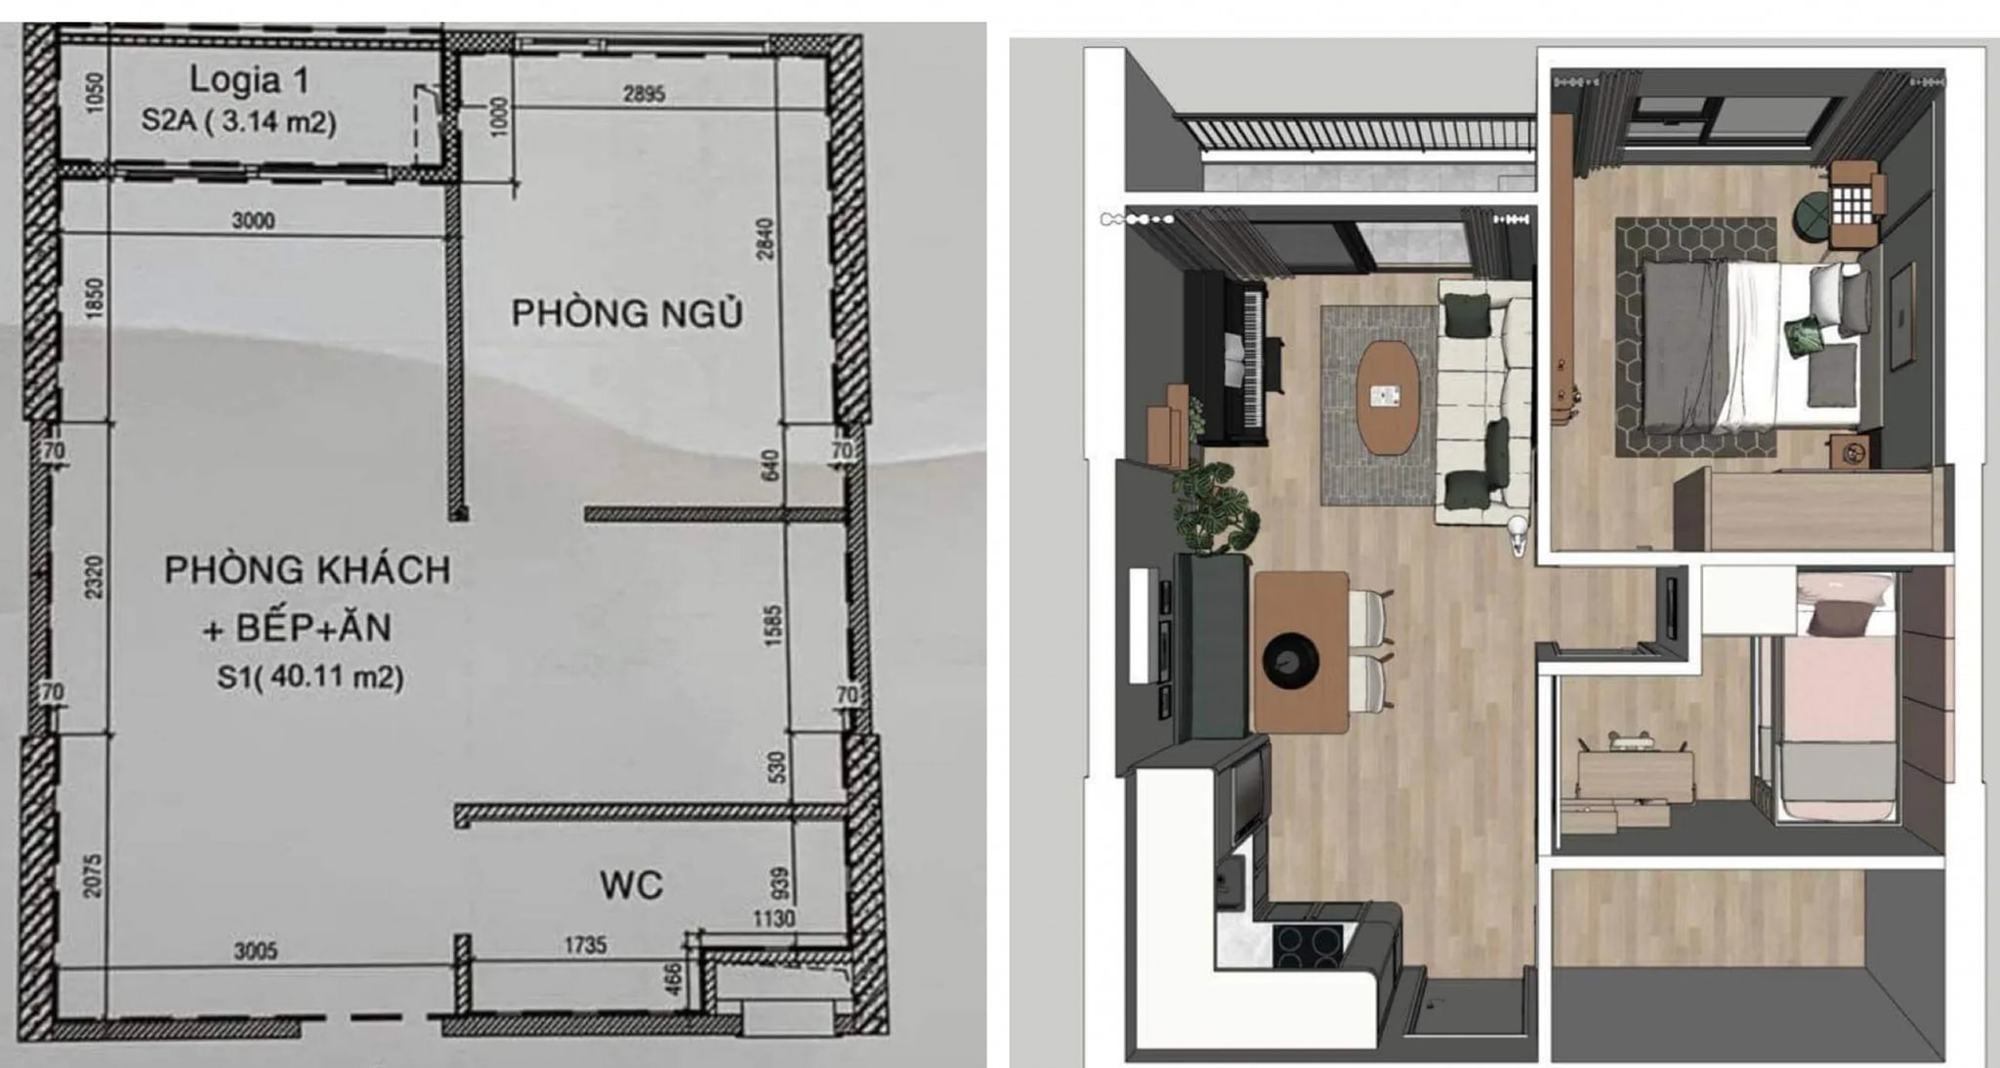 Căn hộ 40m² nhỏ hẹp ở Sài Gòn vừa đẹp lại thoáng đãng nhờ thiết kế theo phong cách Midcentury Modern  - Ảnh 2.